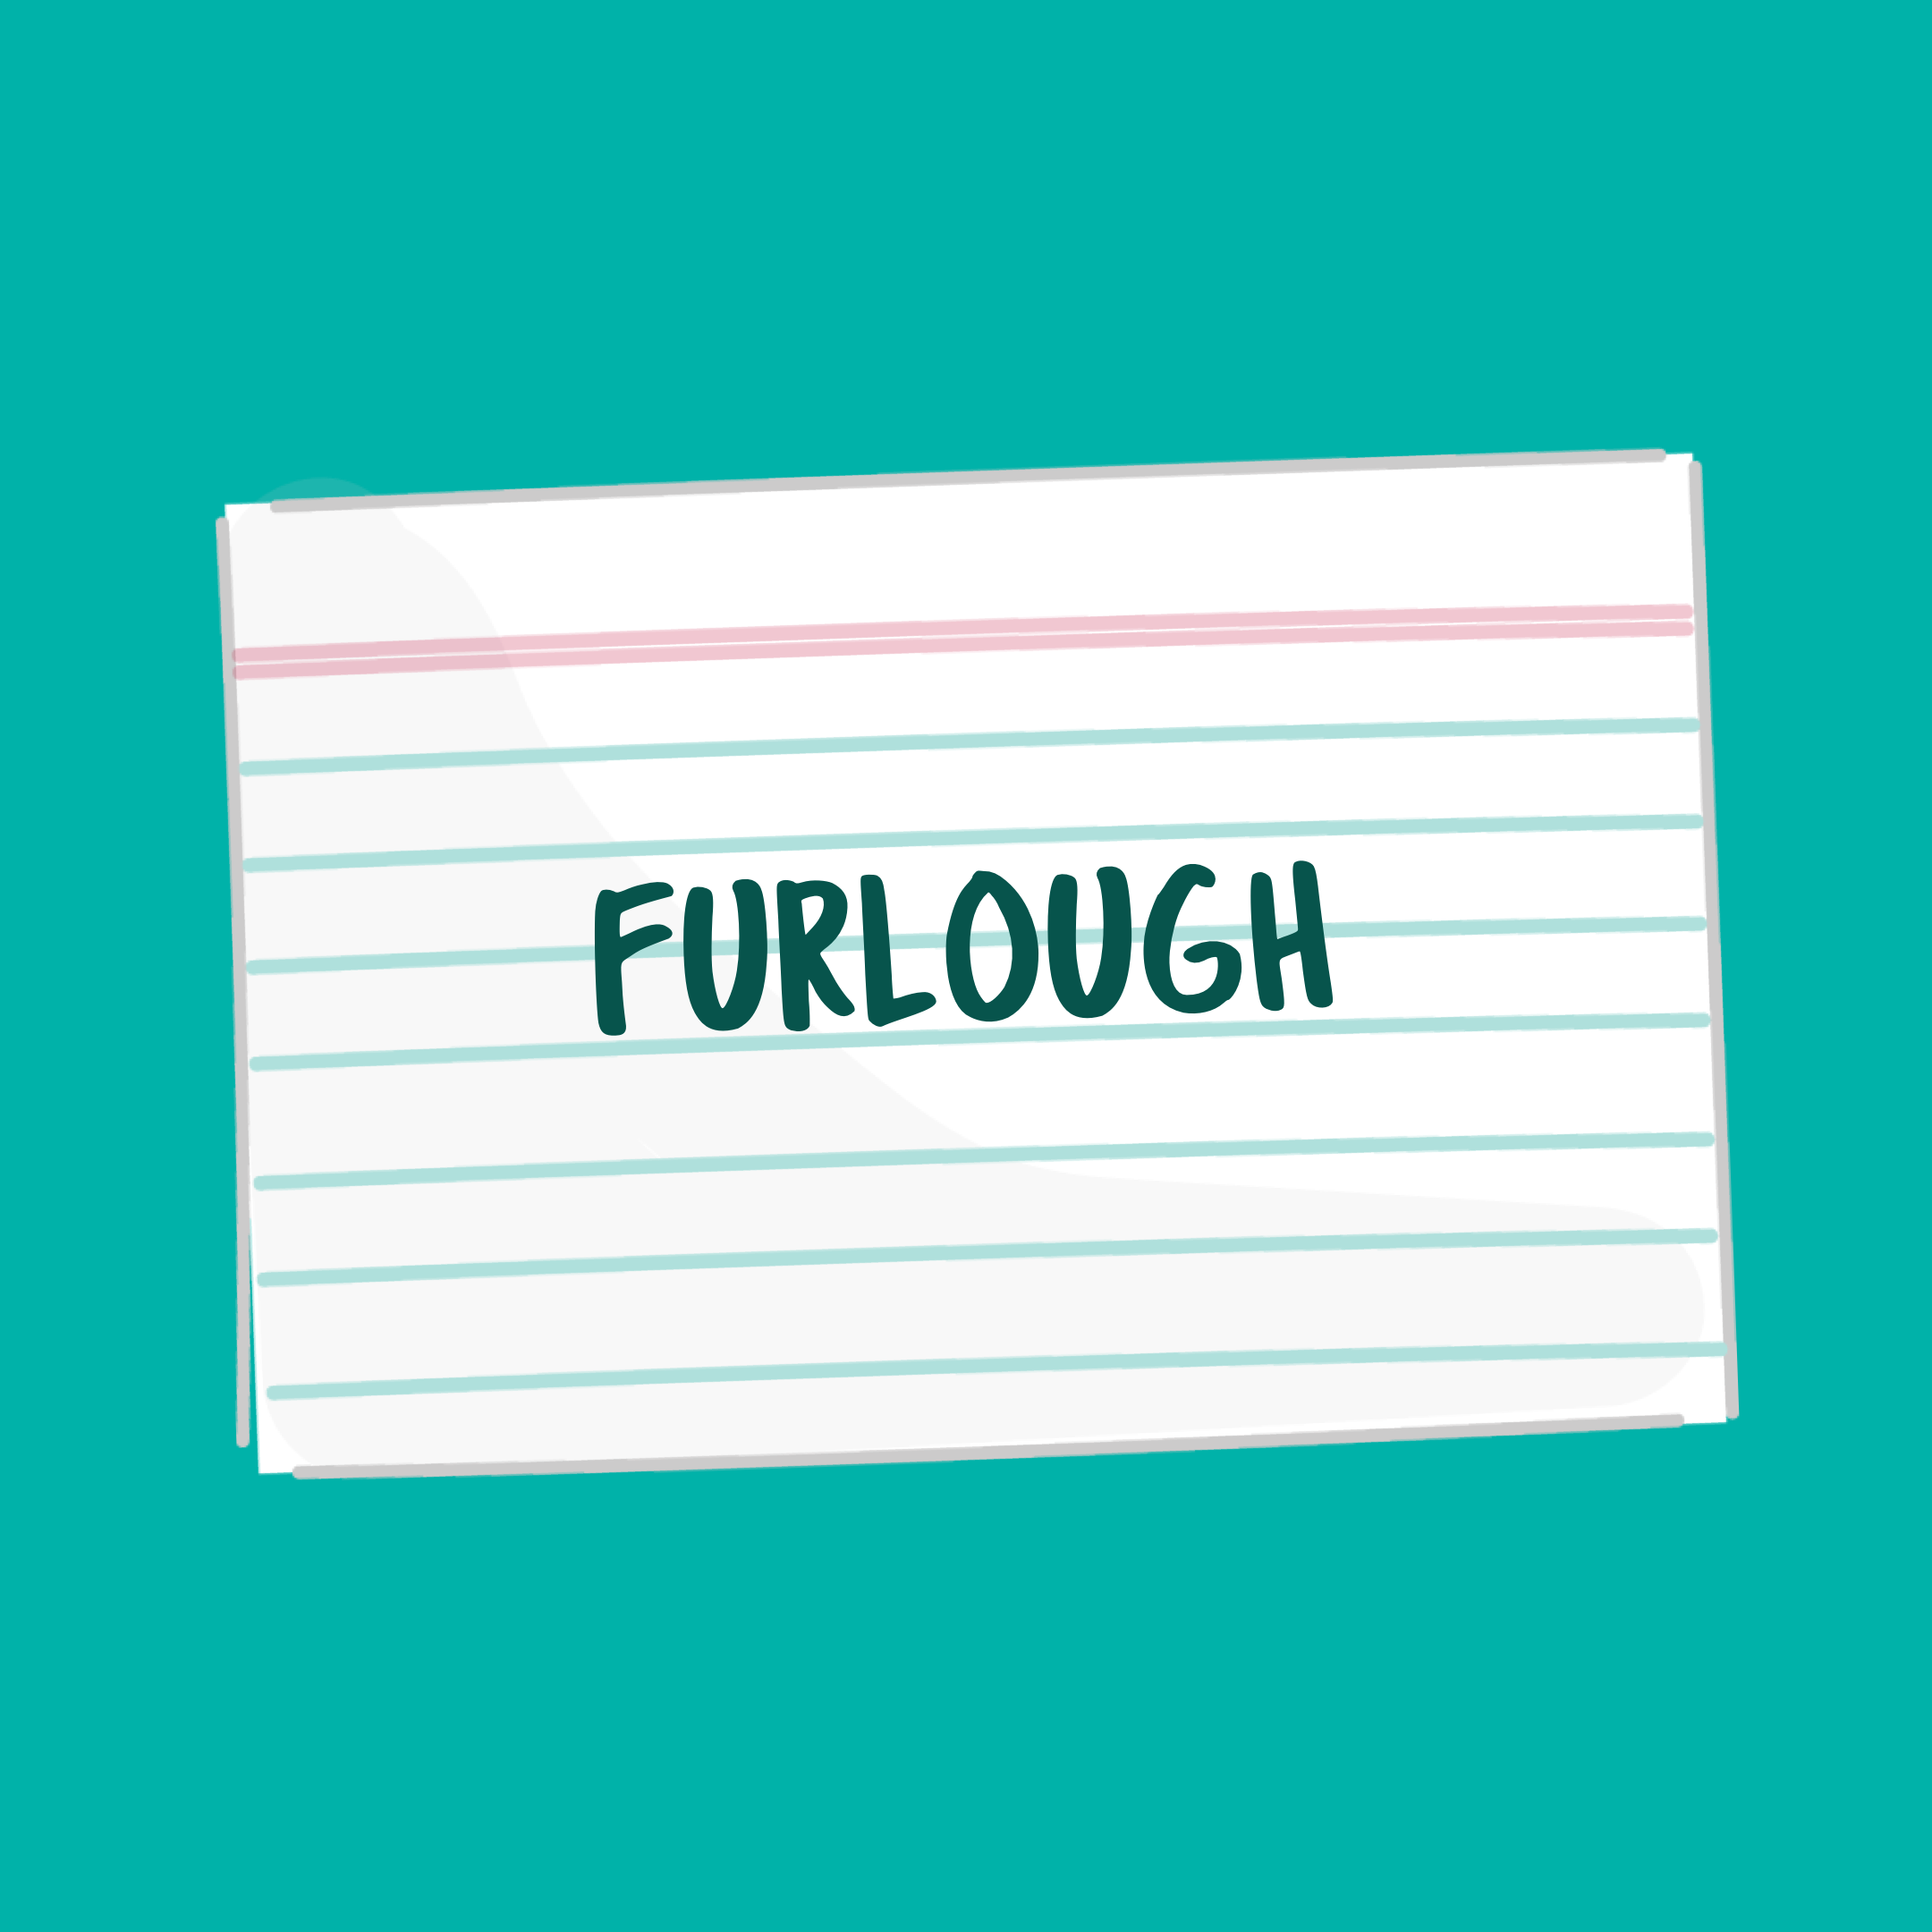 furlough definition flash card